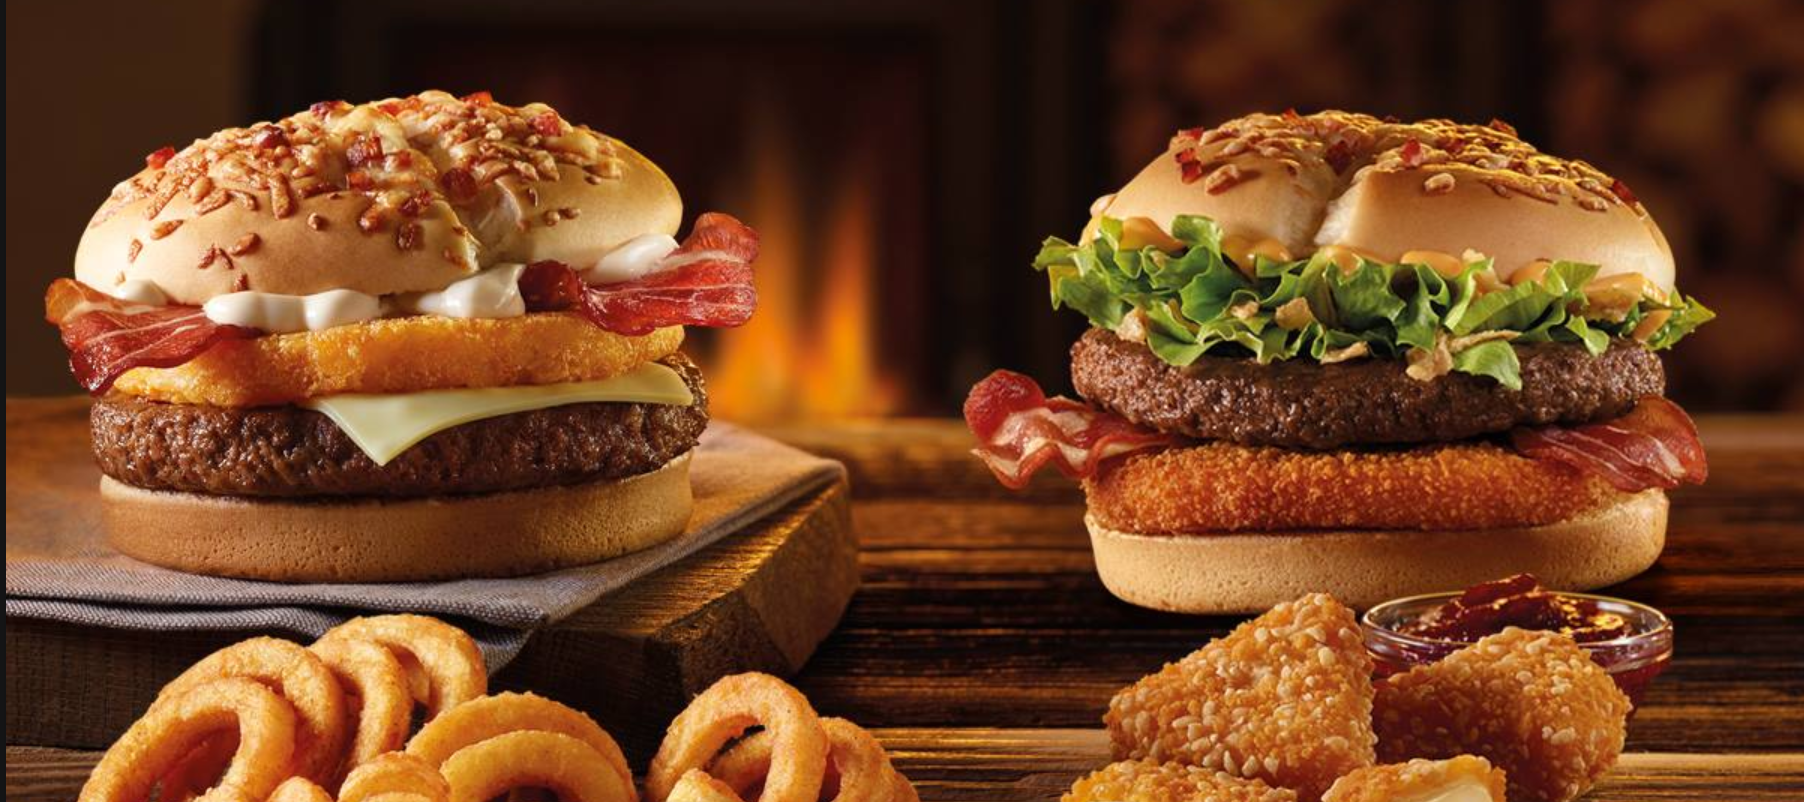 Lumberjack Burger mitikoa itzuli da. Aurtengo McDonald's ogitarteko onena ere eros dezakezu haragirik gabe